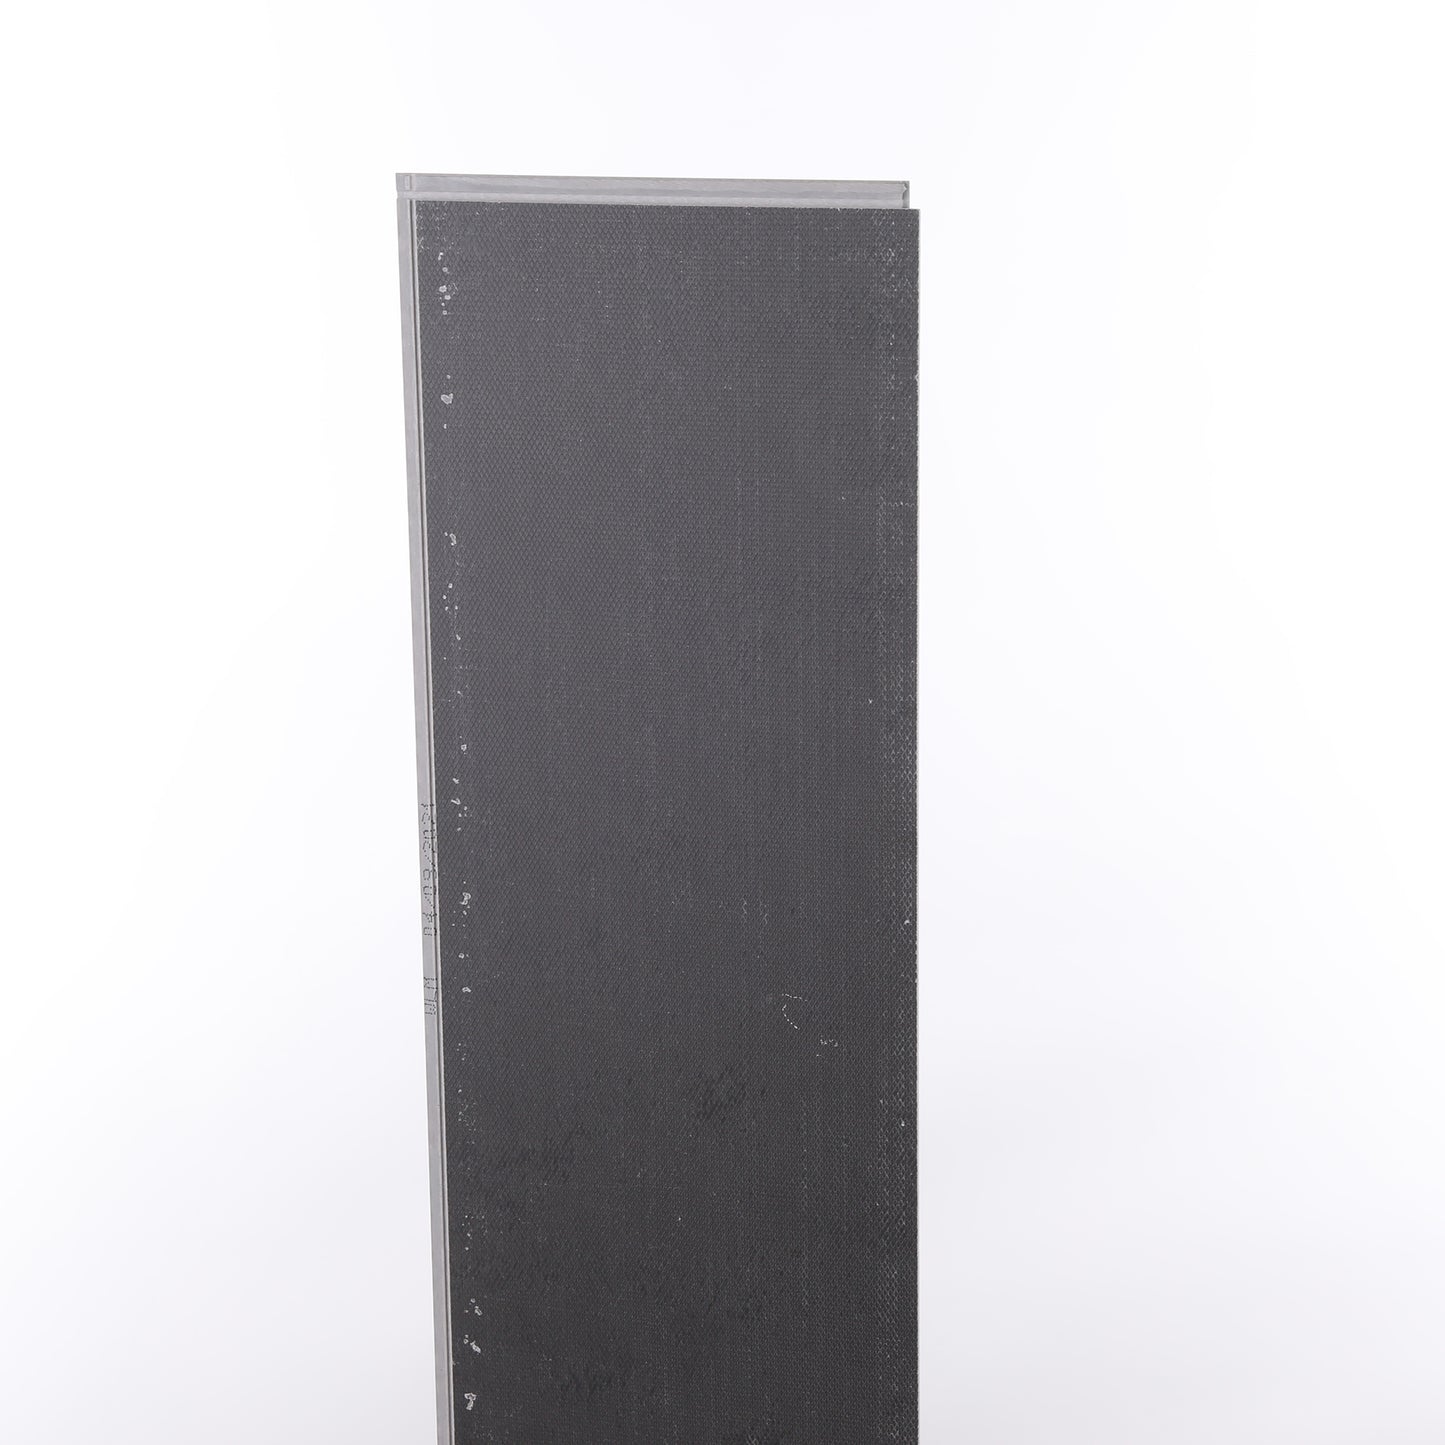 4mm Winchester Oak HDPC® Waterproof Luxury Vinyl Plank Flooring 9.13 in. Wide x 48 in. Long